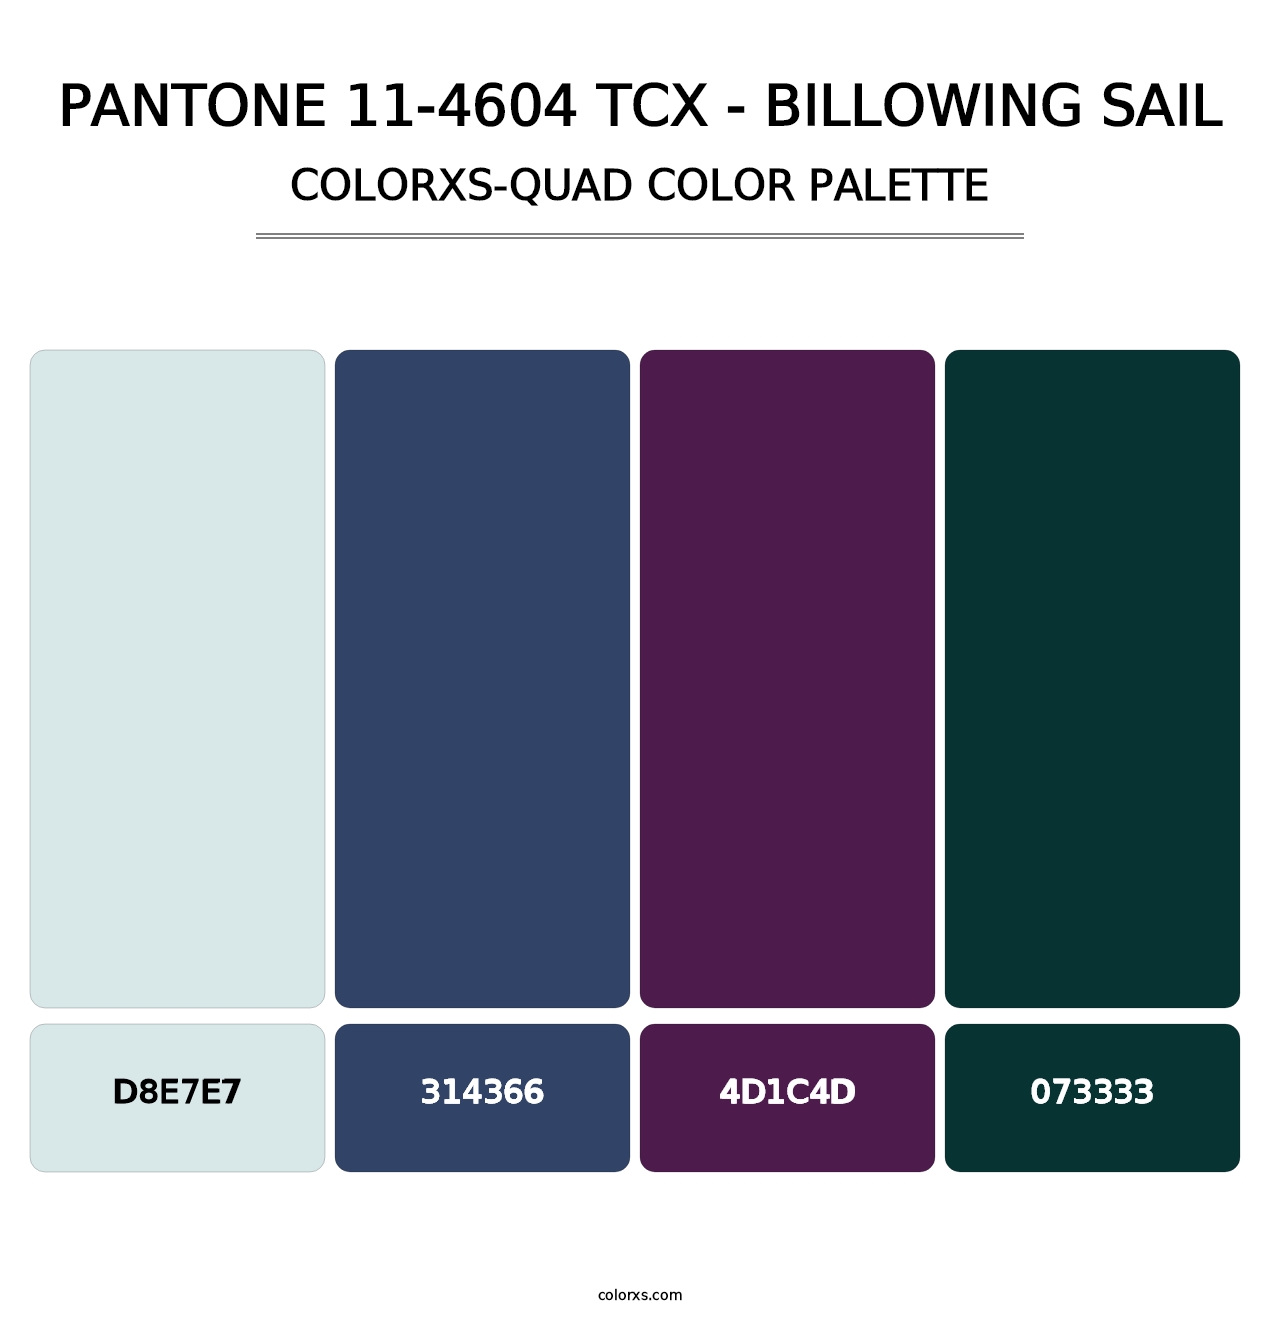 PANTONE 11-4604 TCX - Billowing Sail - Colorxs Quad Palette